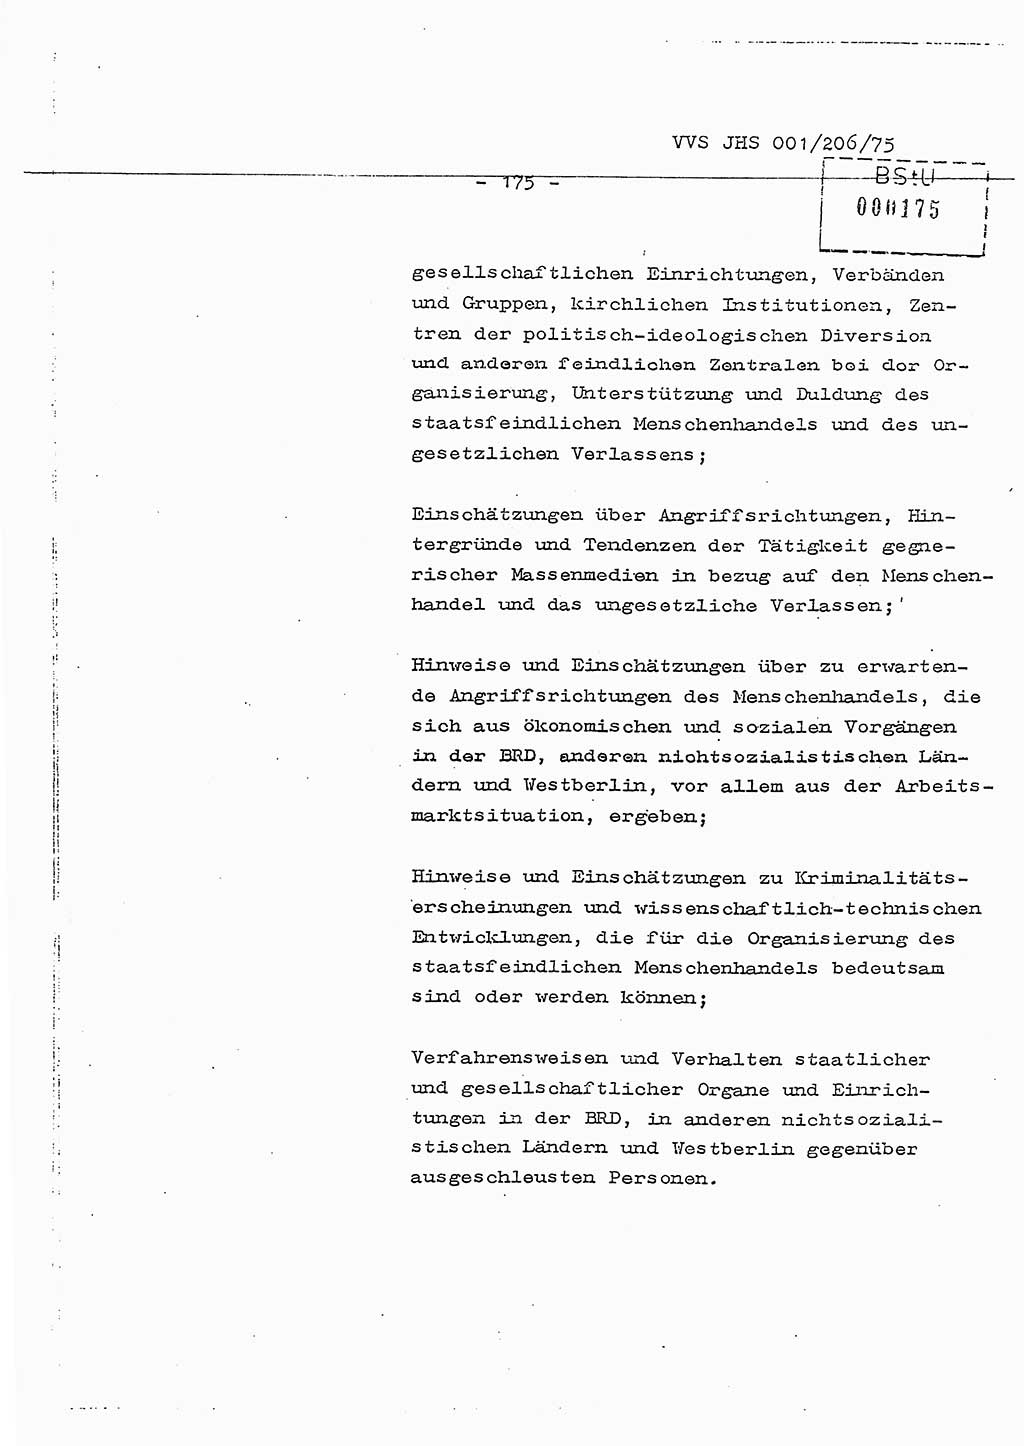 Dissertation Generalmajor Manfred Hummitzsch (Leiter der BV Leipzig), Generalmajor Heinz Fiedler (HA Ⅵ), Oberst Rolf Fister (HA Ⅸ), Ministerium für Staatssicherheit (MfS) [Deutsche Demokratische Republik (DDR)], Juristische Hochschule (JHS), Vertrauliche Verschlußsache (VVS) 001-206/75, Potsdam 1975, Seite 175 (Diss. MfS DDR JHS VVS 001-206/75 1975, S. 175)